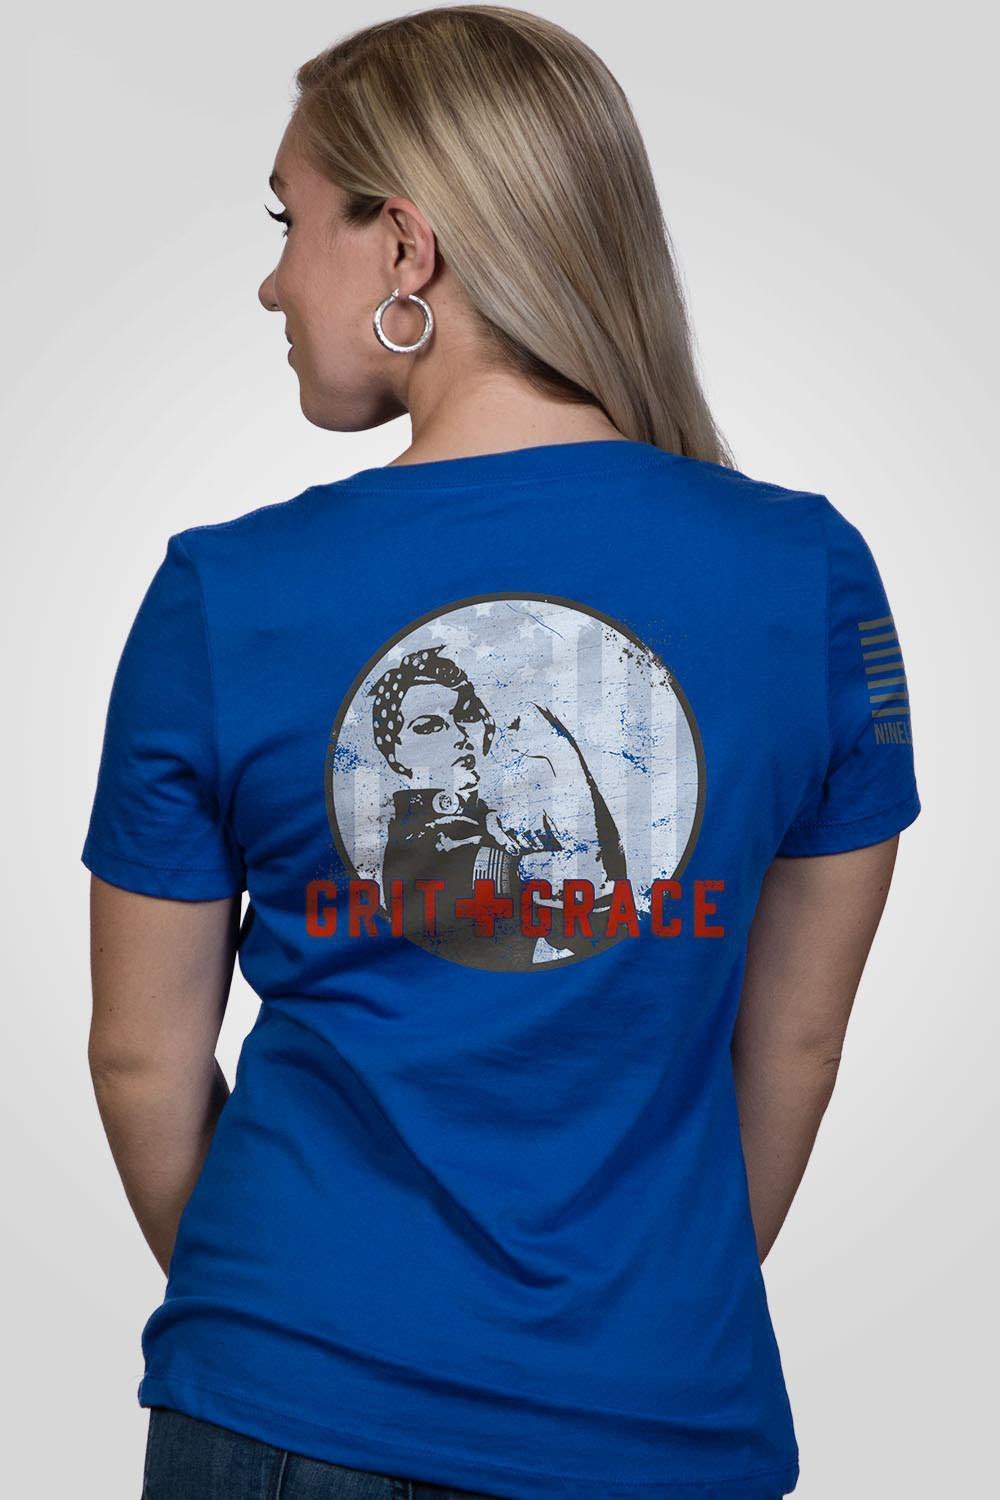 Grit and Grace - Women's V-Neck Shirt - Rosie The Riveter – Nine Line ...